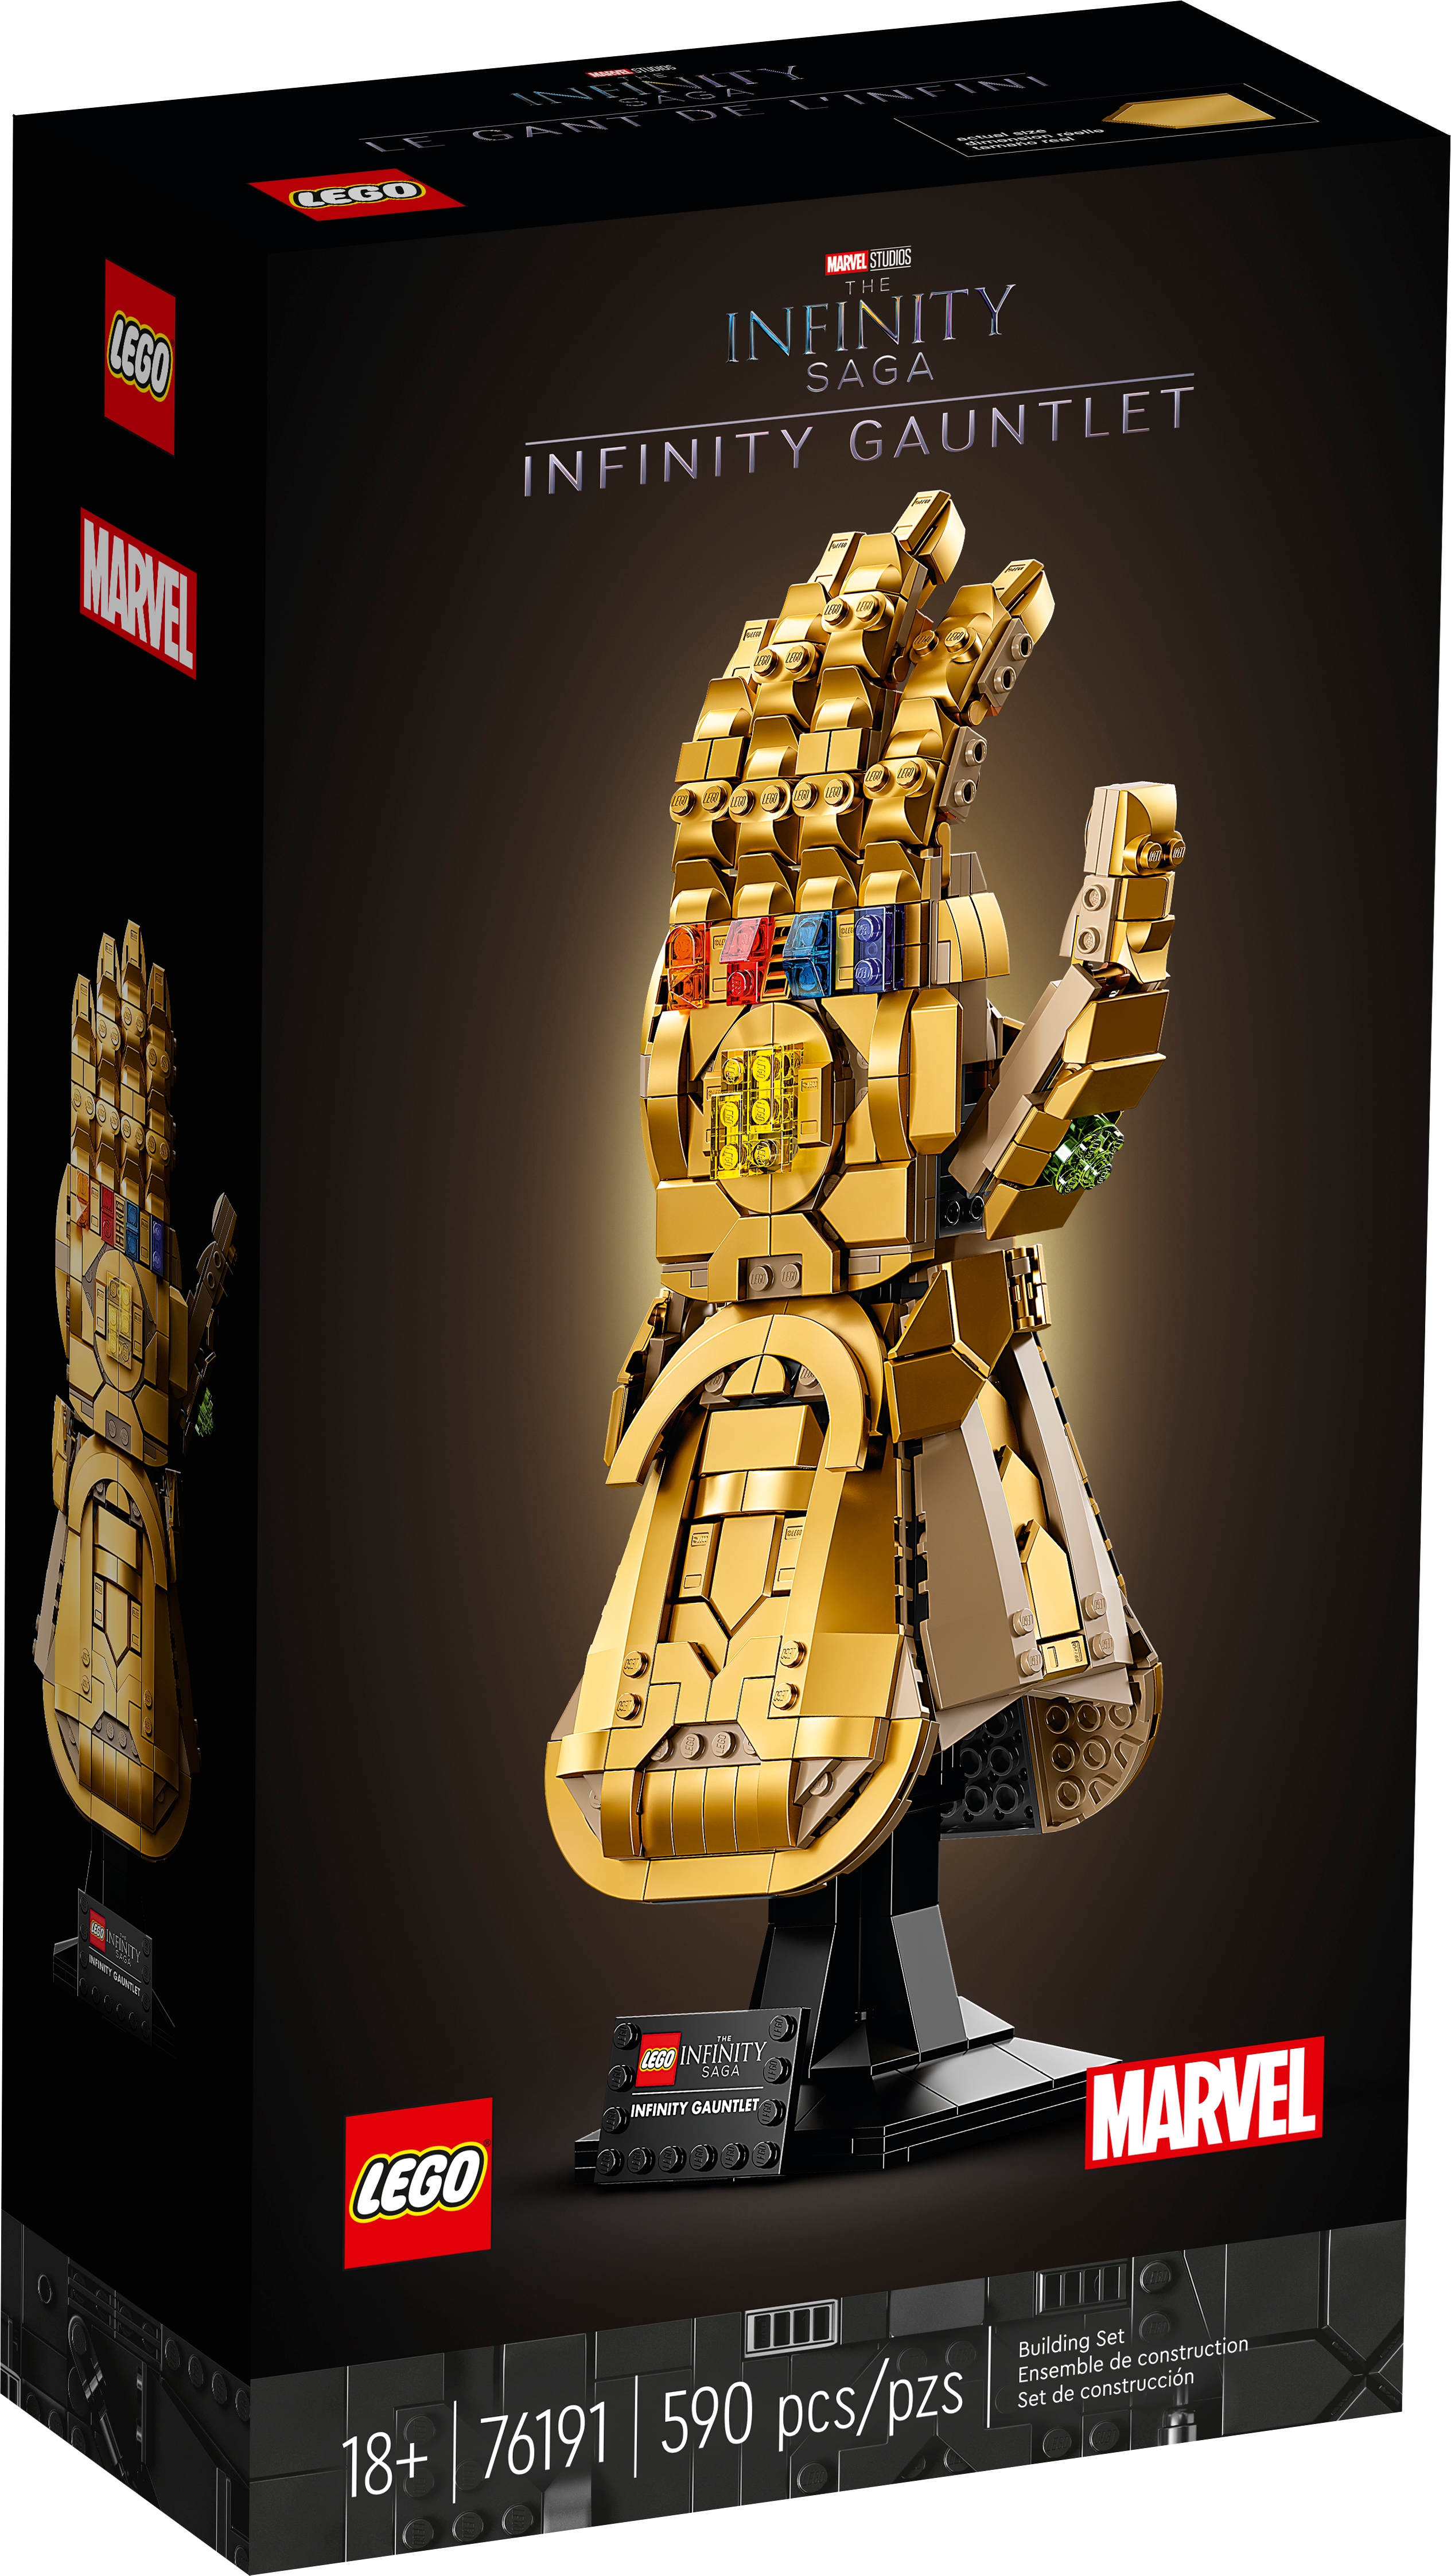 Lego-Infinity Gauntlet-red 76144-End Game-Nuevo-piedras 